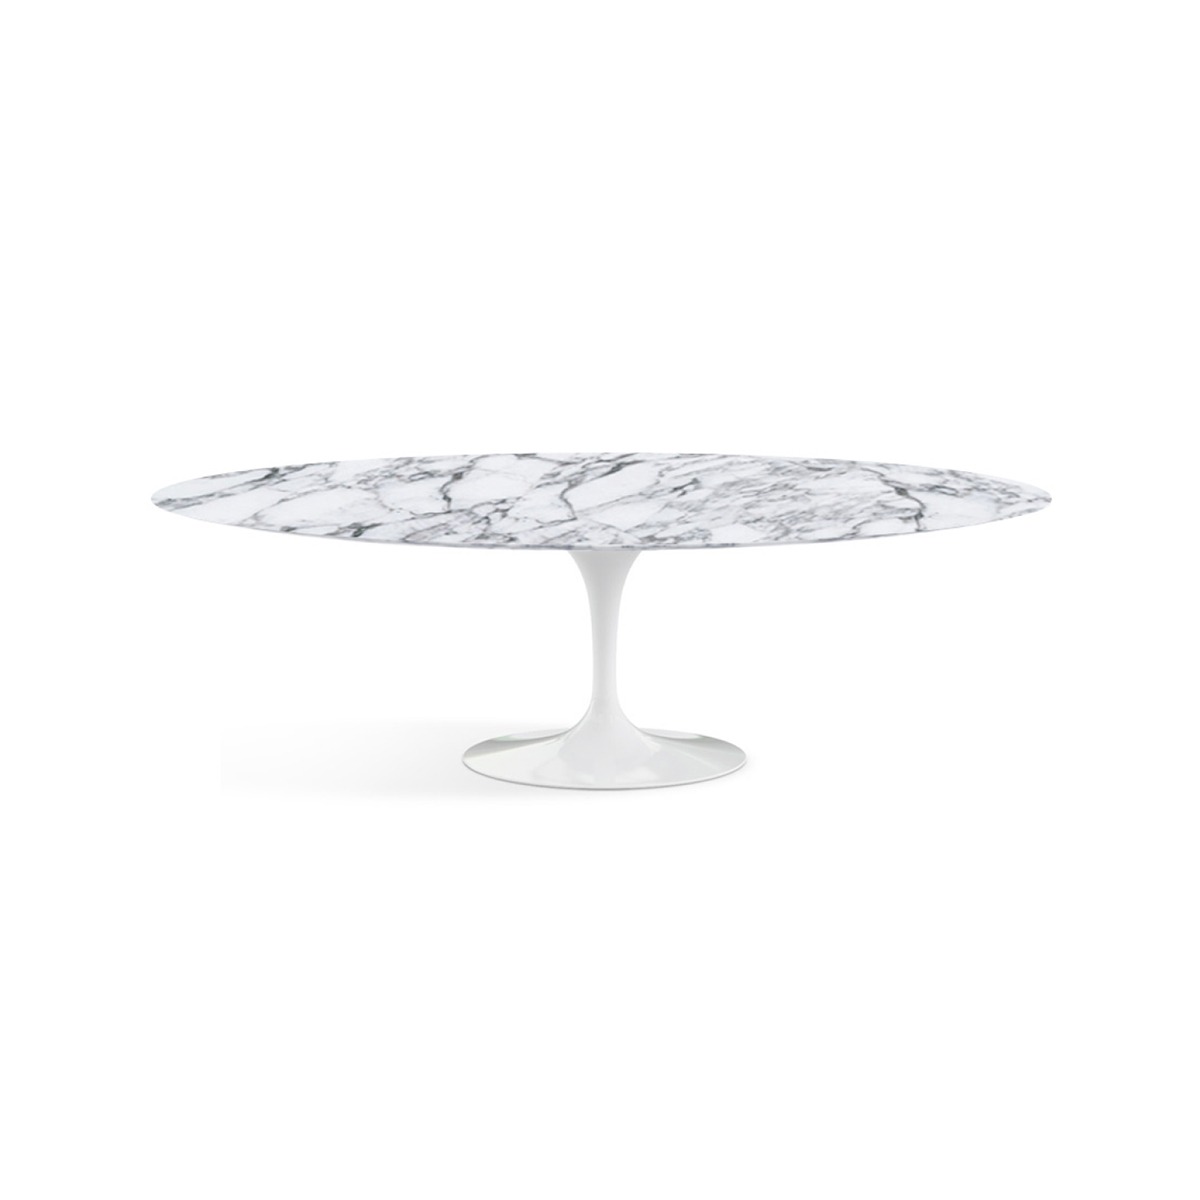 KNOLL Saarinen Oval Dining Table - 244cm